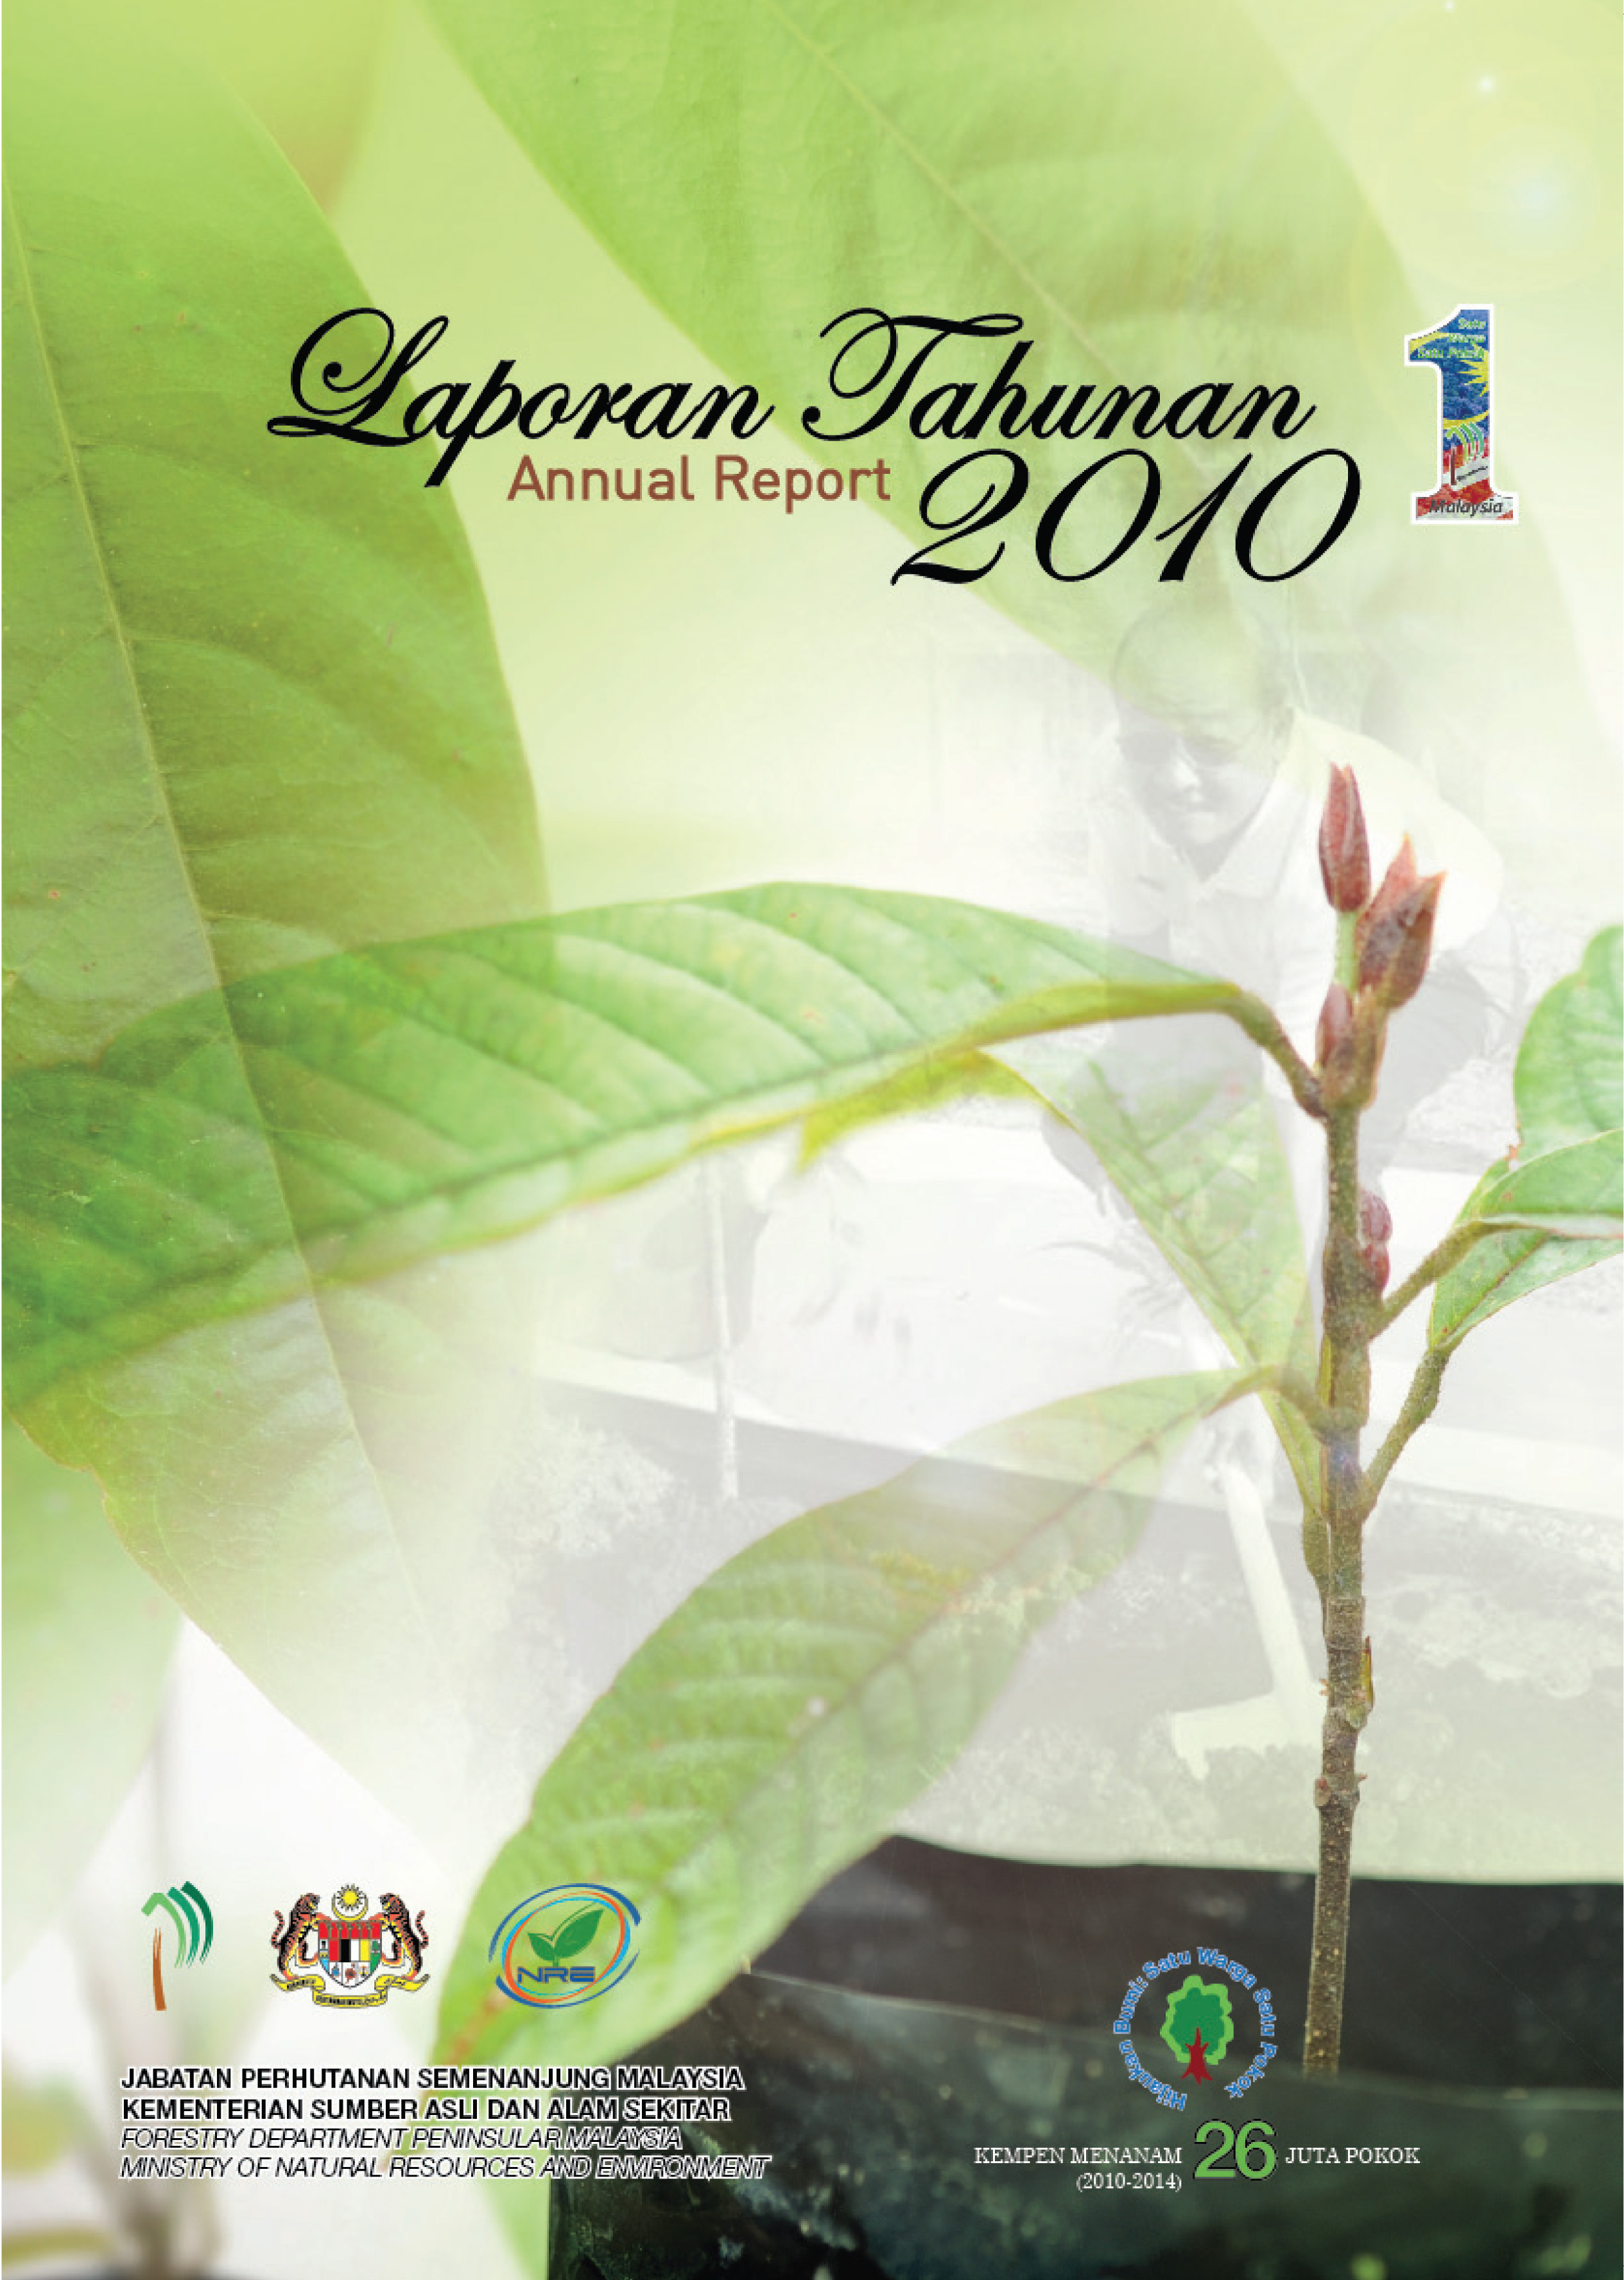 laporantahunan2010